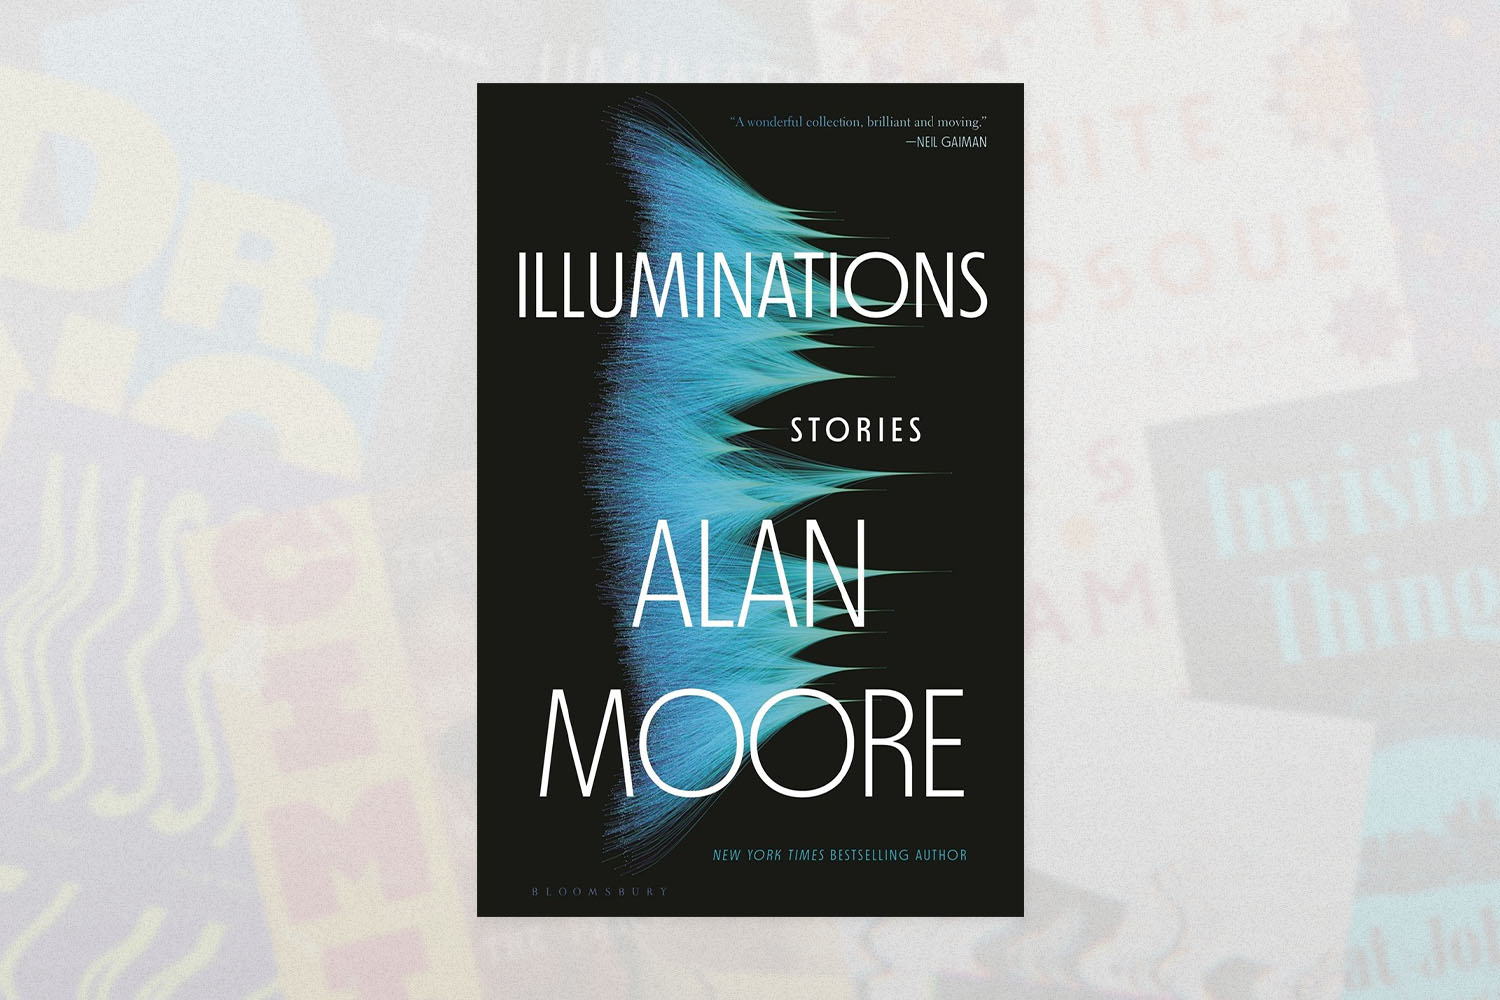 Illuminations, Alan Moore